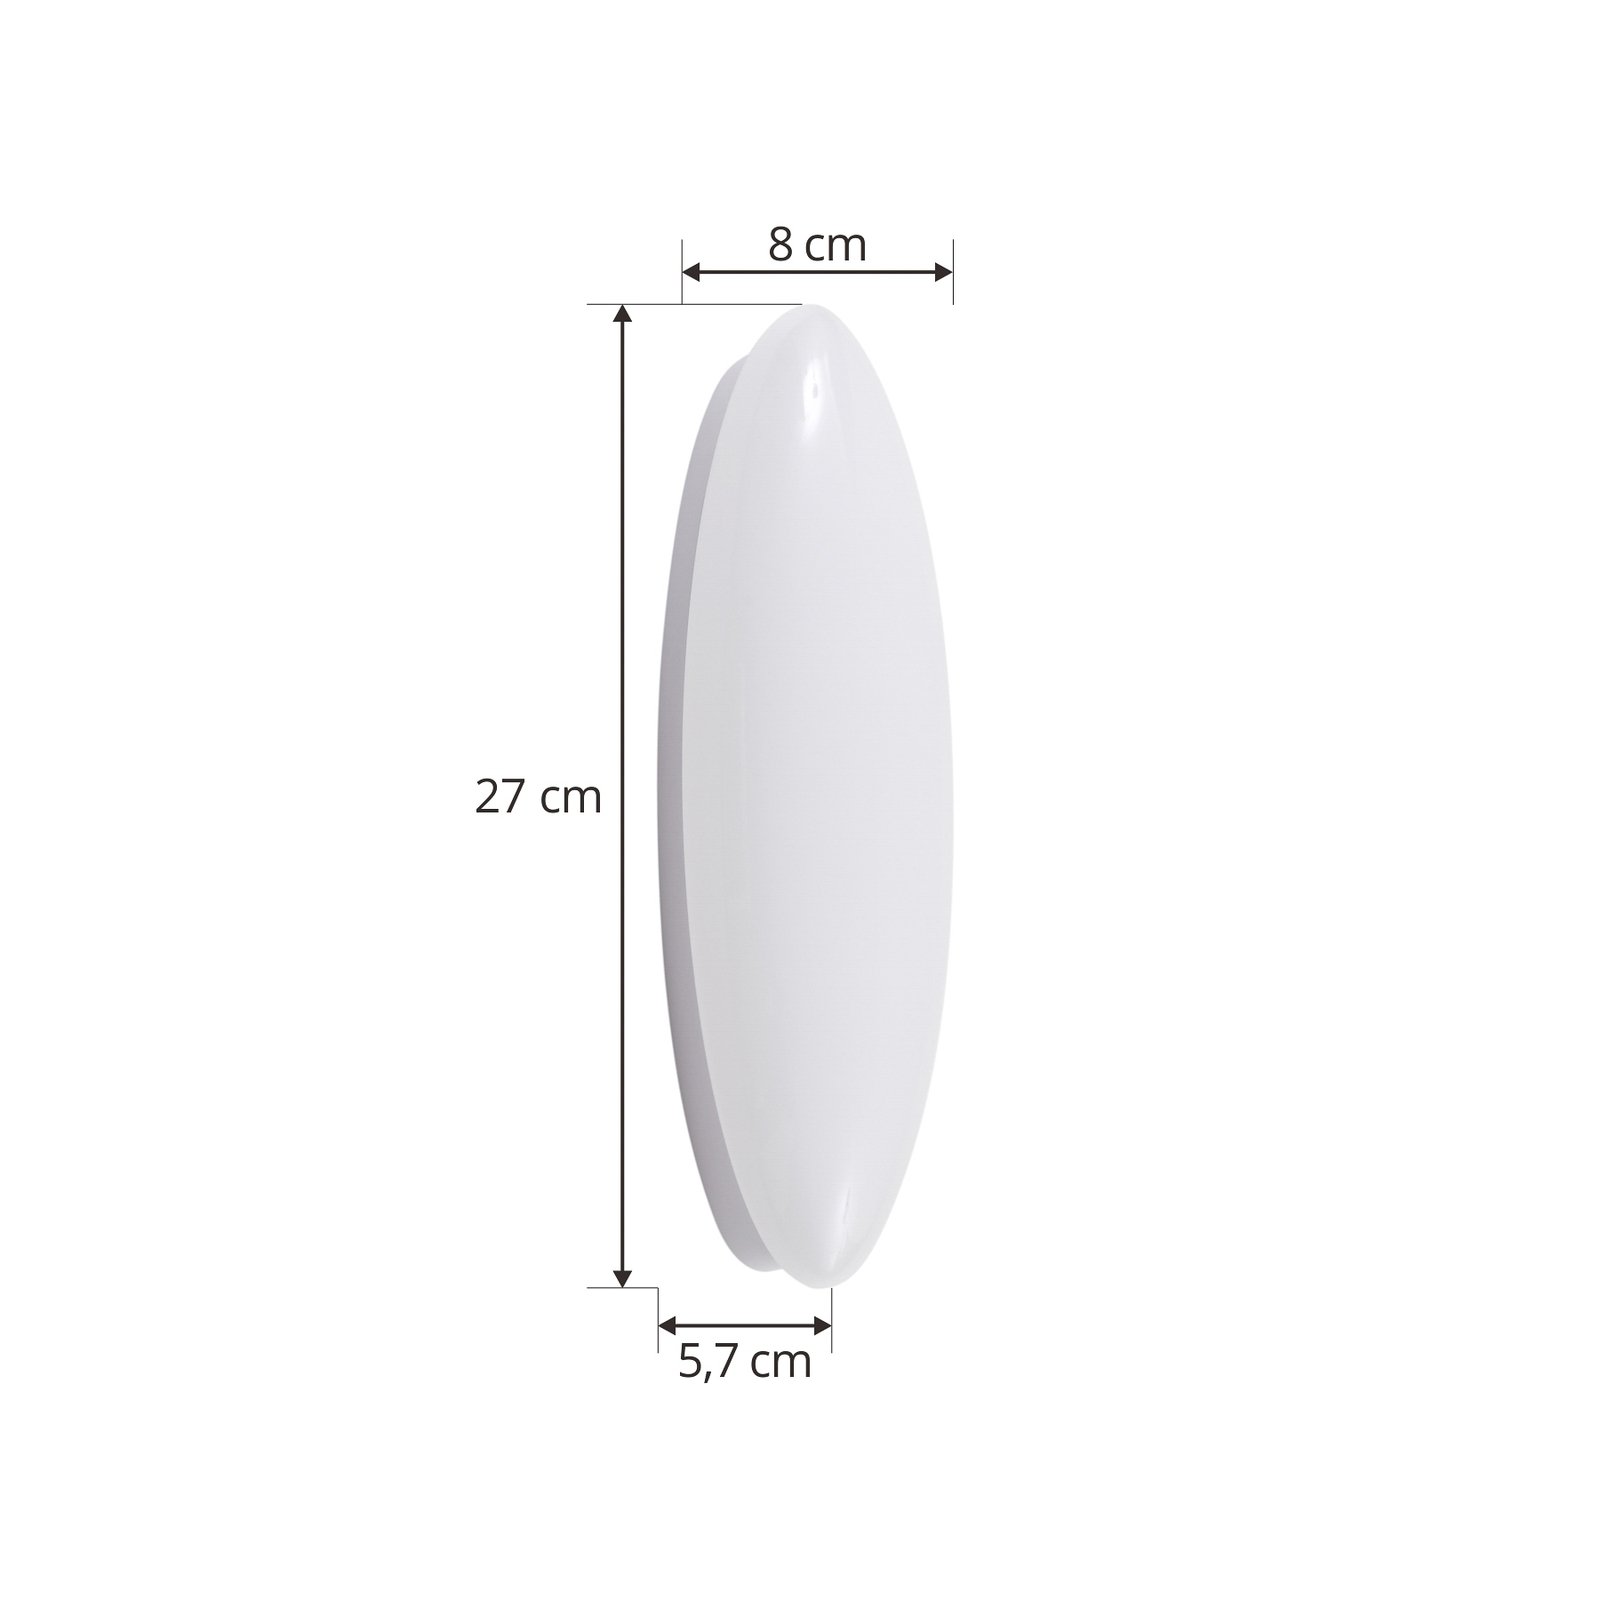 Lucande LED wall light Leihlo, white, plastic, 8 cm high